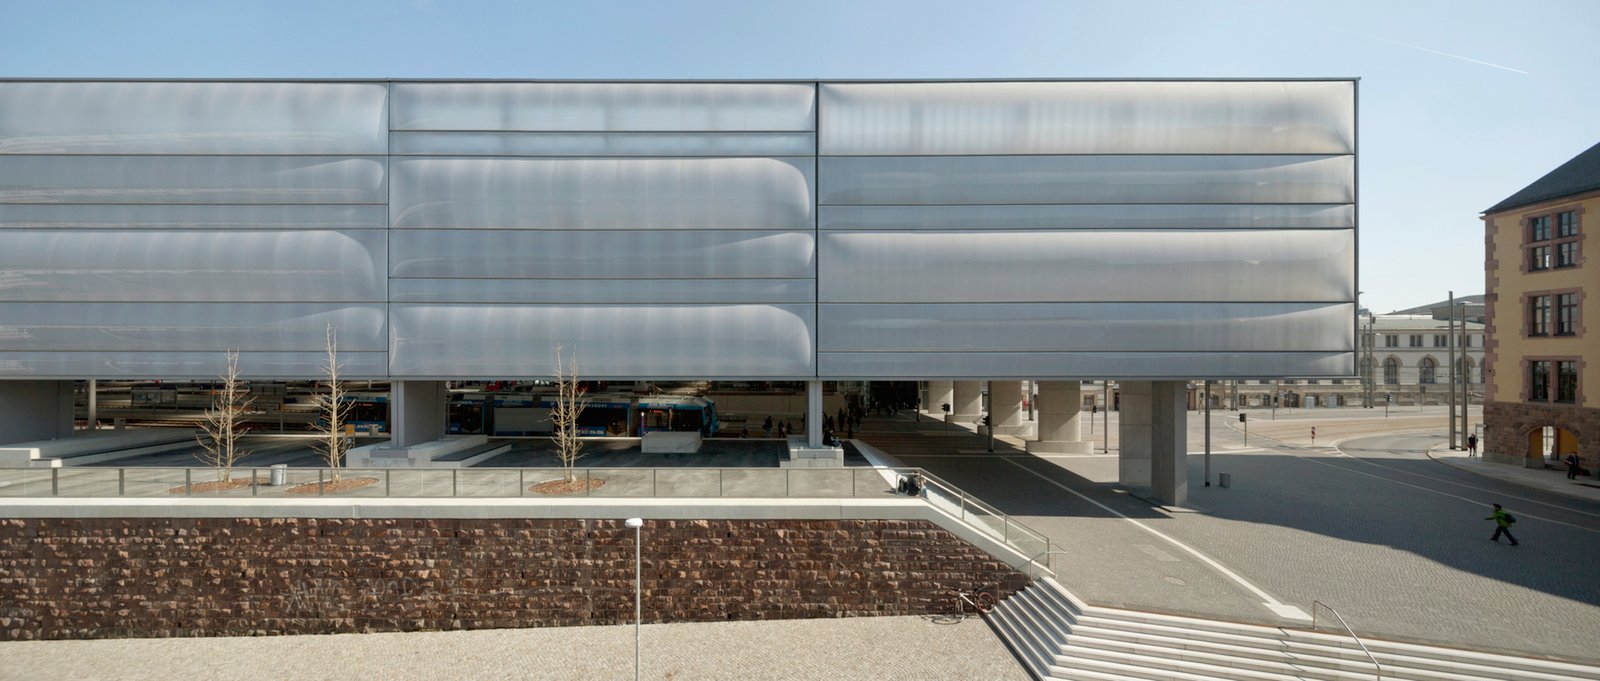 Estação Principal de Chemnitz / Grüntuch Ernst Architects